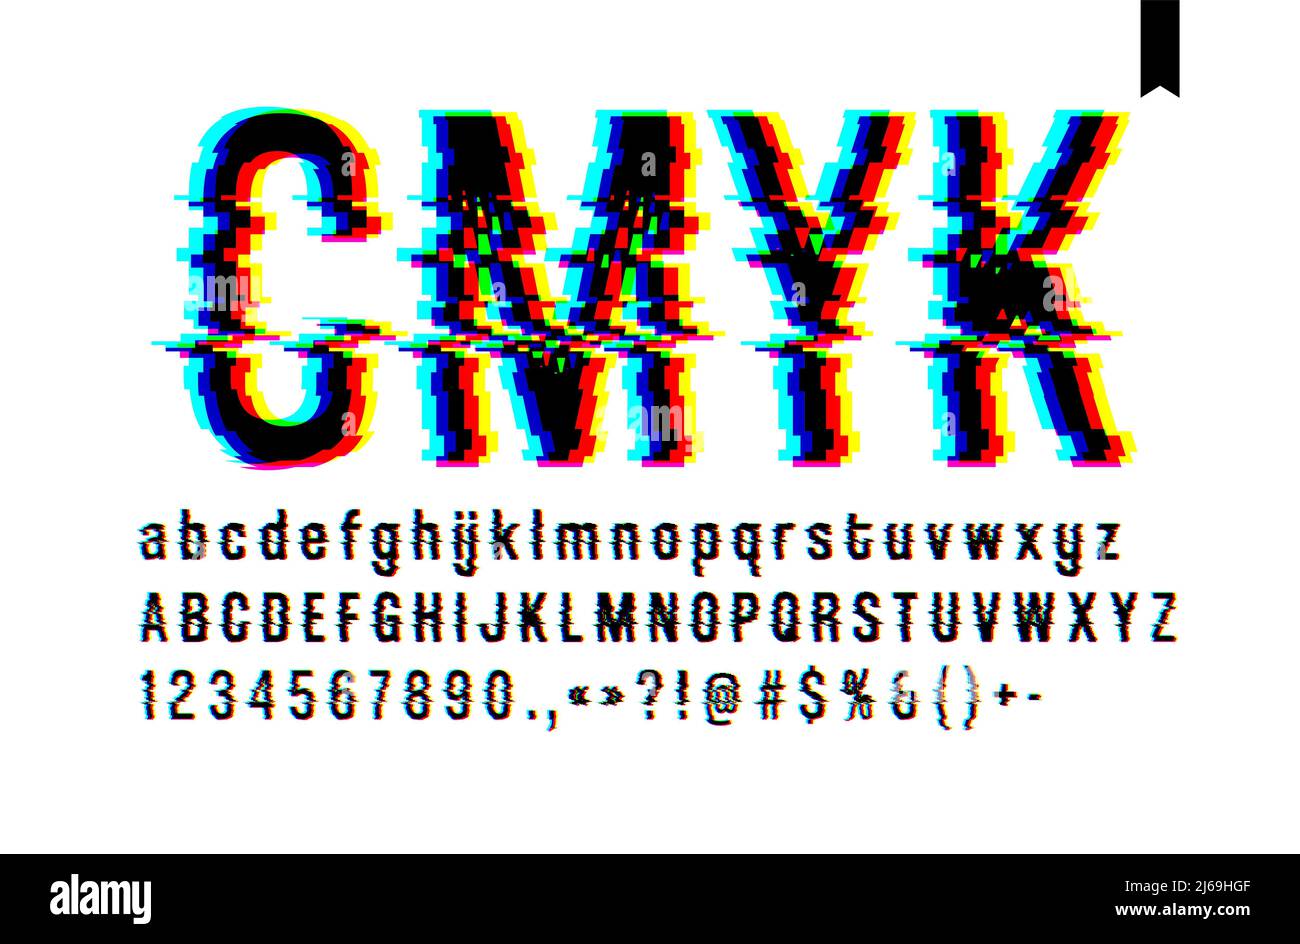 Stile moderno distorto carattere glitch, mescolando blu rosa e giallo canale schermo difetto, lettere maiuscole e minuscole, solo su uno sfondo chiaro Illustrazione Vettoriale